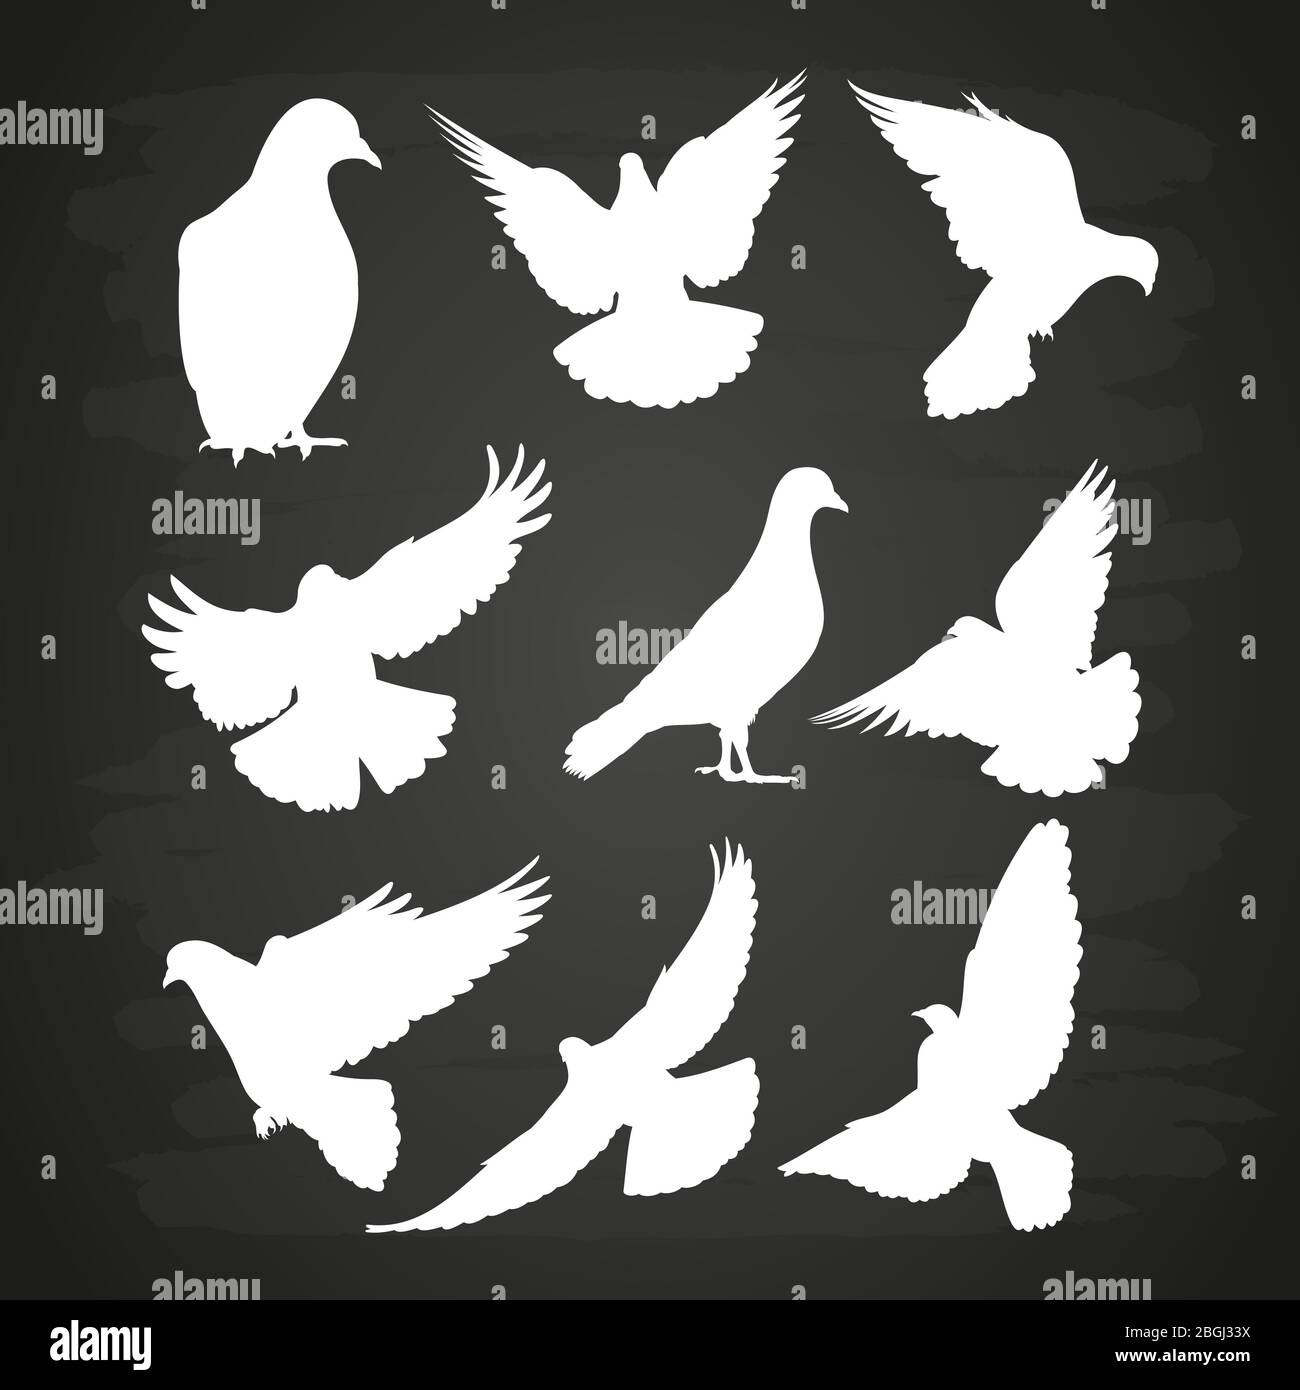 Weiße Taube Silhouette auf Tafel gesetzt. Illustration Vogeltaube Vektor-Sammlung Stock Vektor